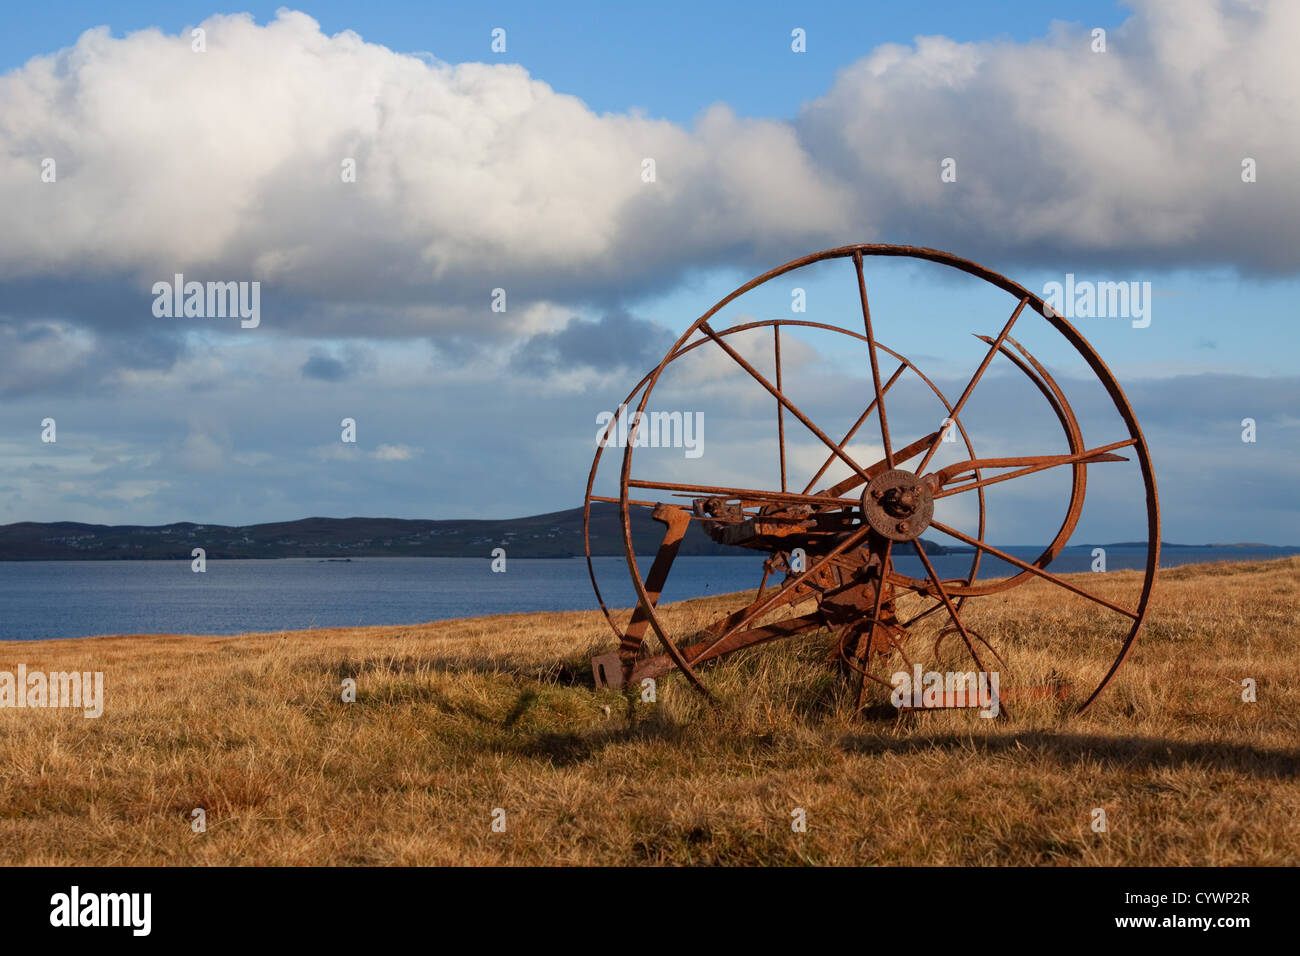 Il triste rimane di una rovina croft e casa a sud di Nesting, Isole Shetland Foto Stock